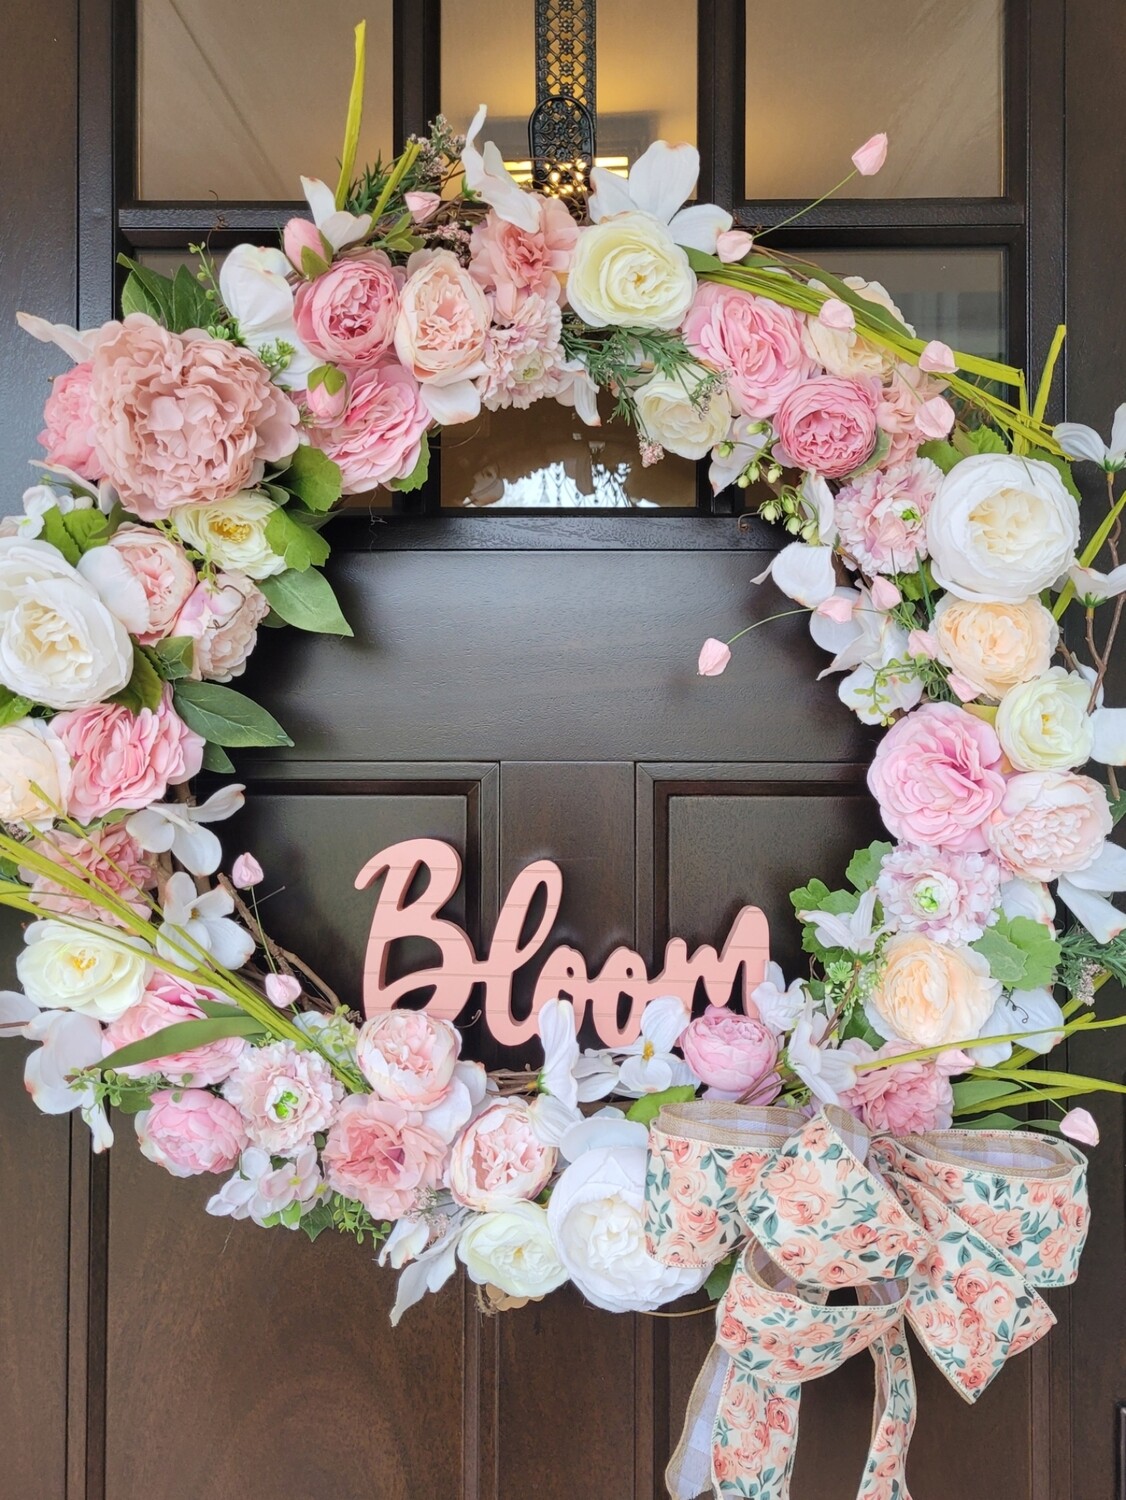 XL Floral "bloom" wreath